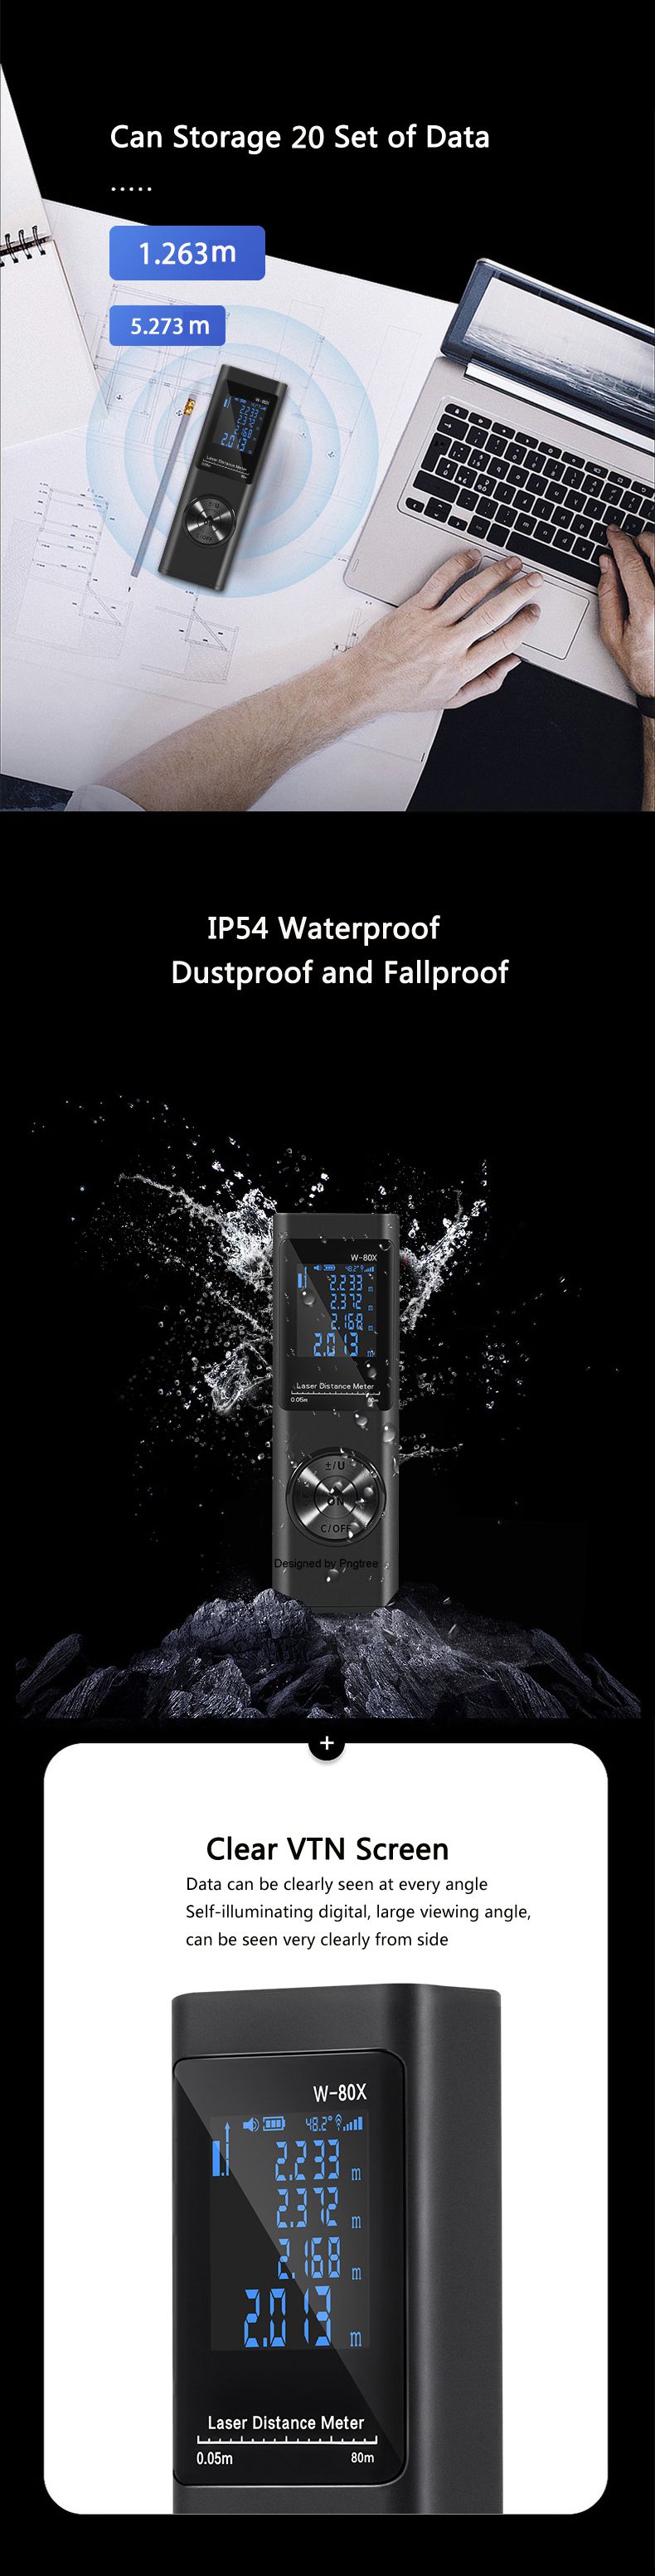 DANIU-LS-XS-Mini-Laser-Distance-Meter-Swith-Bult-in-Rechargeable-Battery-Waterproof-Dustproof-Fallpr-1589068